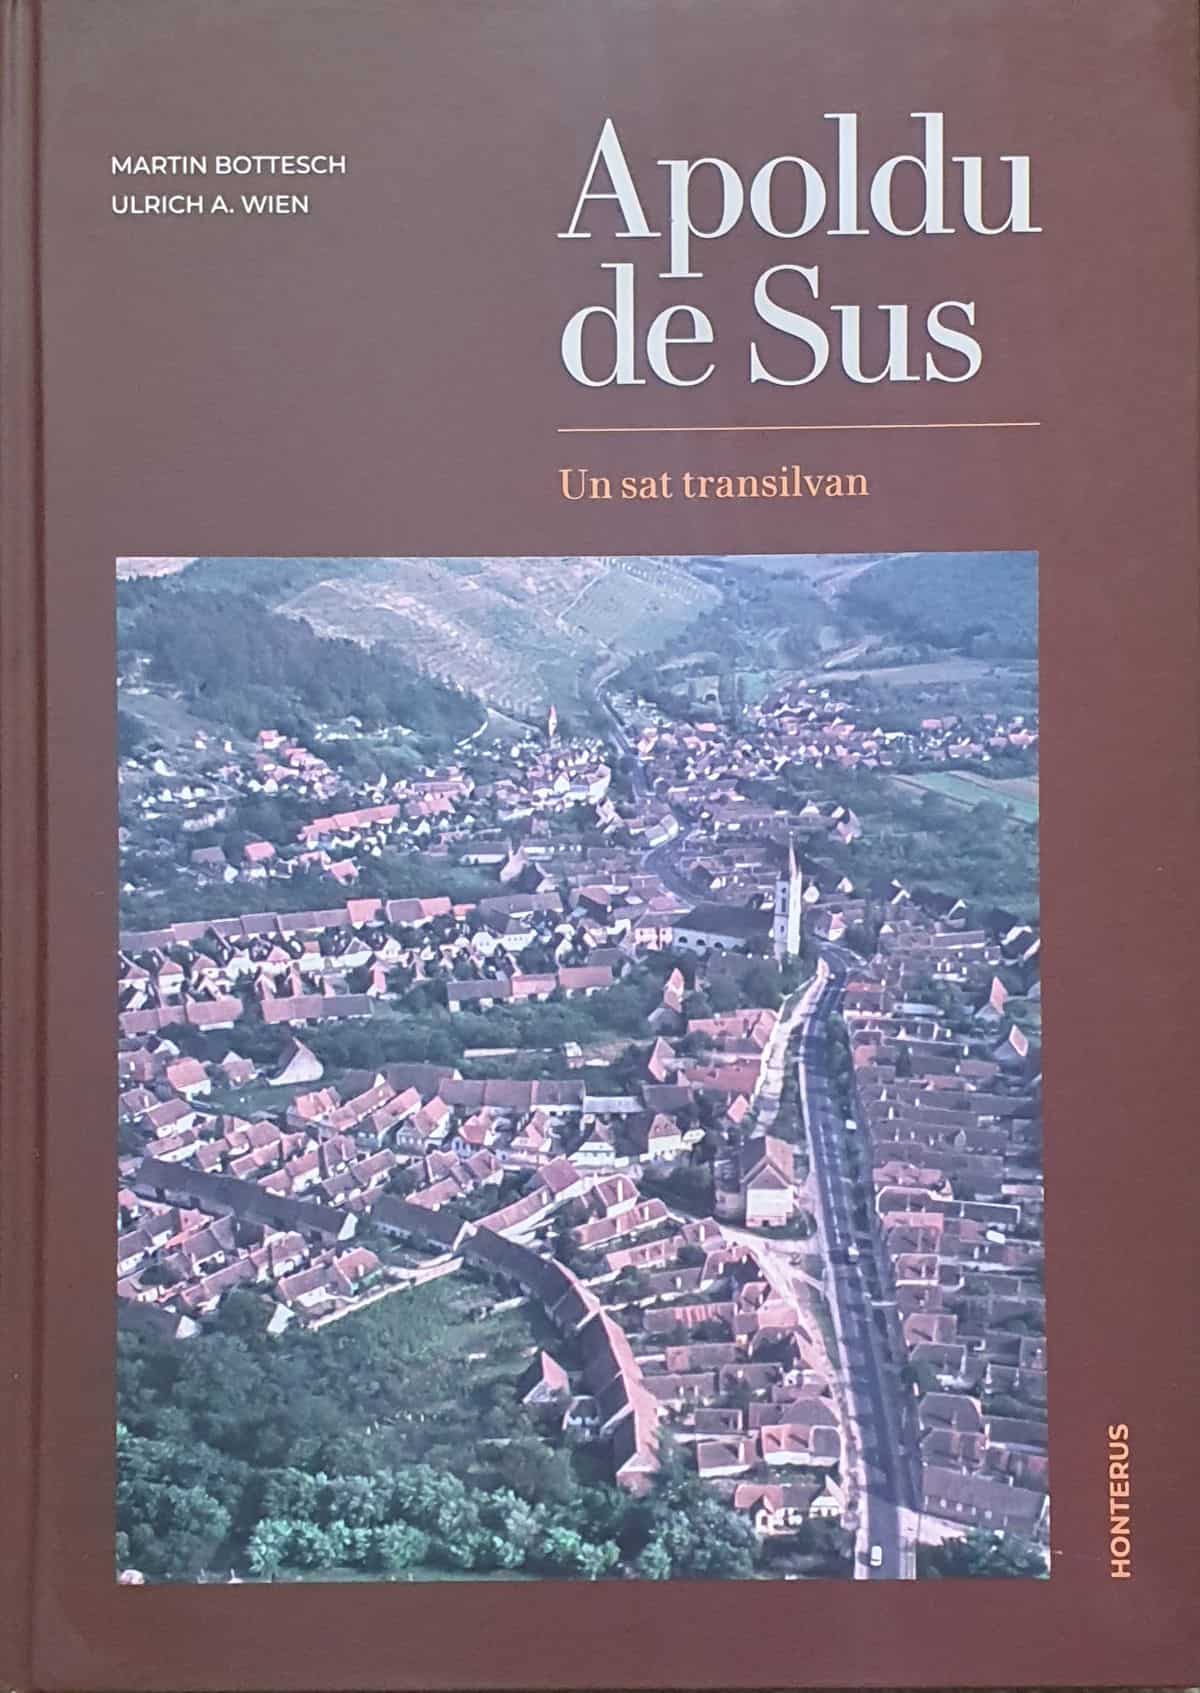 martin bottesch lansează monografia „apoldu de sus. un sat transilvan”